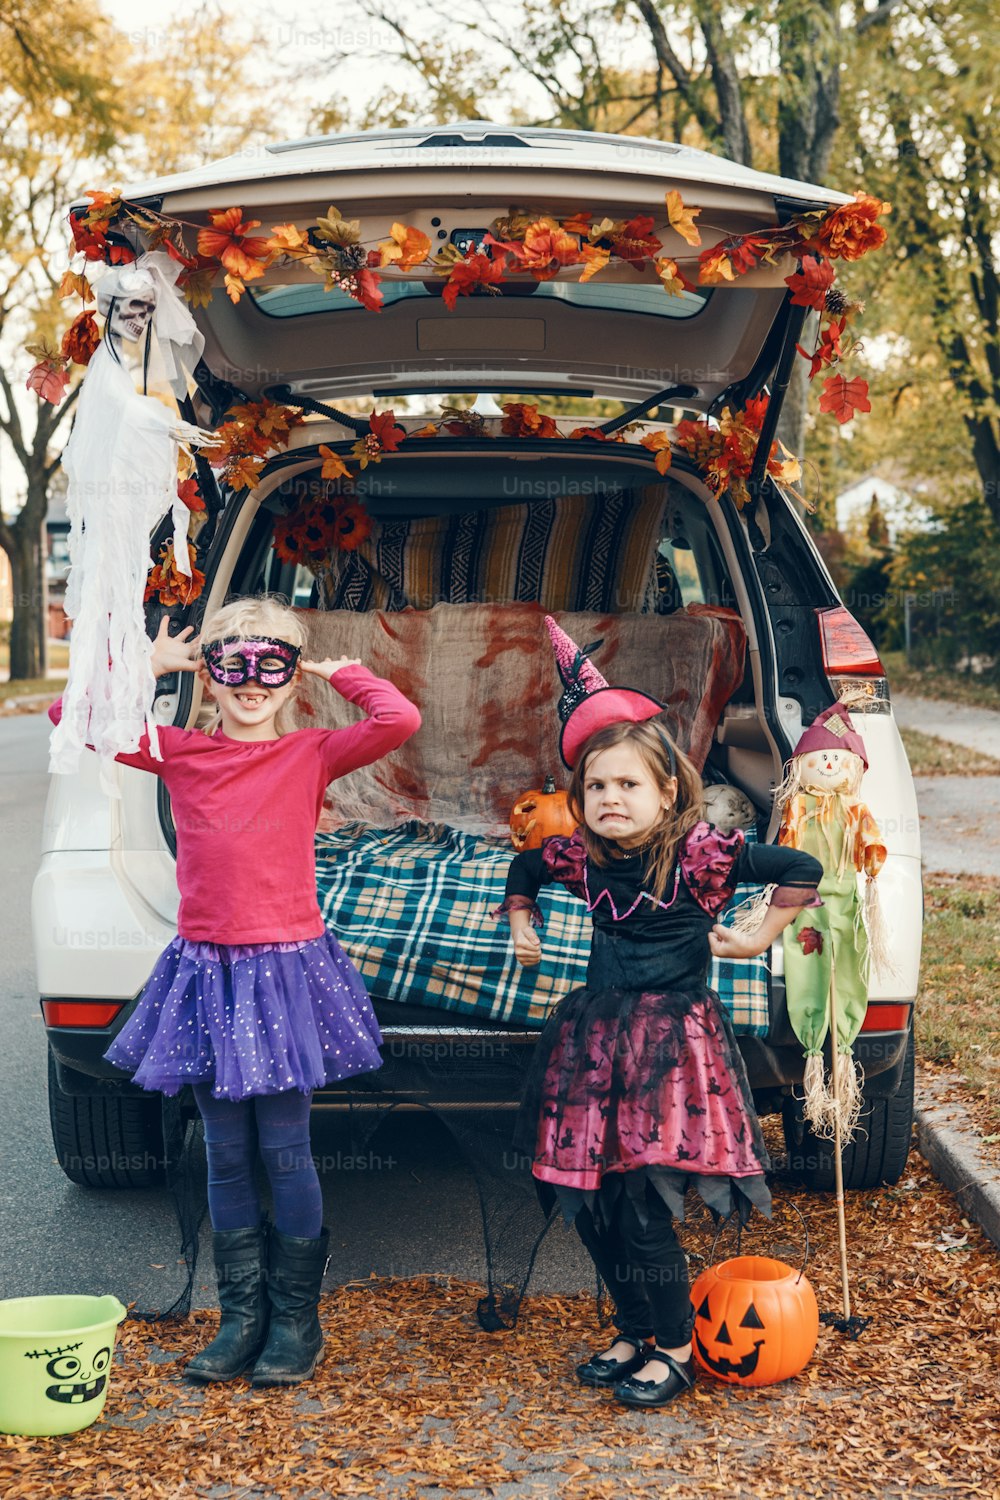 Trucco o tronco. Bambini, fratelli, sorelle, che festeggiano Halloween nel bagagliaio dell'auto. Amici, bambini, ragazze, che si preparano per le vacanze di ottobre all'aperto. Distanziamento sociale e celebrazione alternativa sicura.